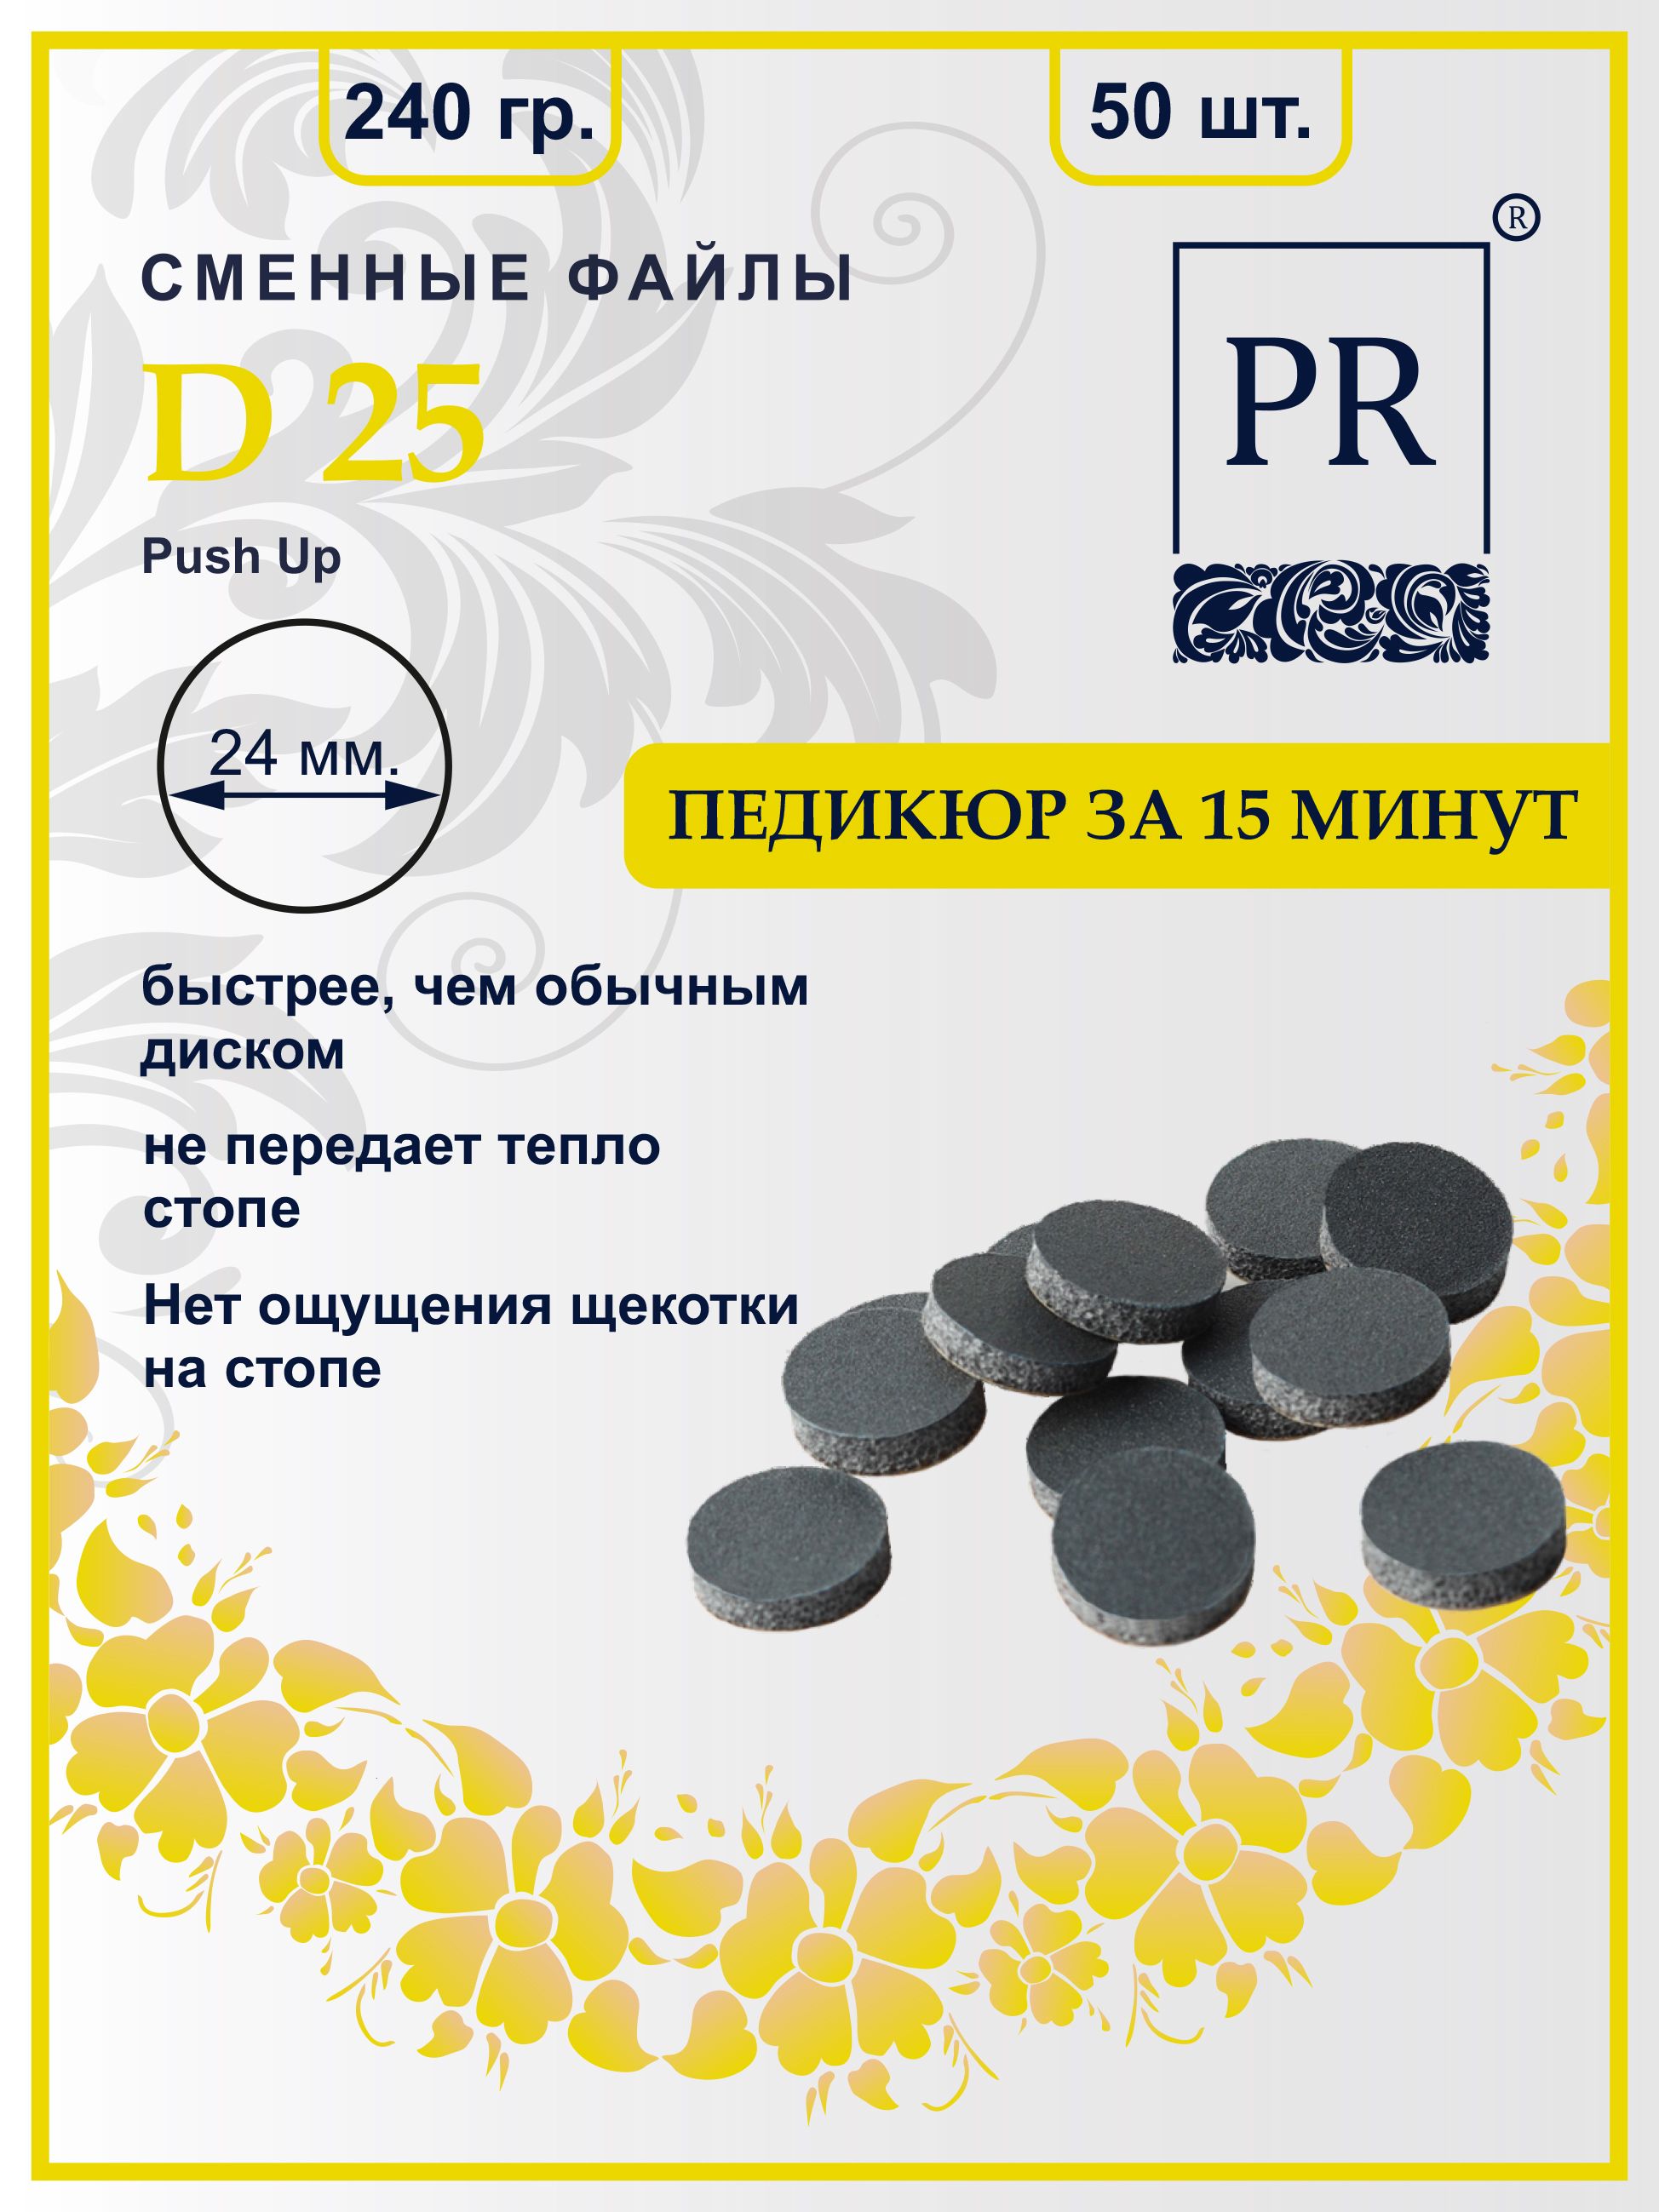 Сменные файлы Pilochki Russia диски Push Up для педикюра для диска L 240 грит 50 штук